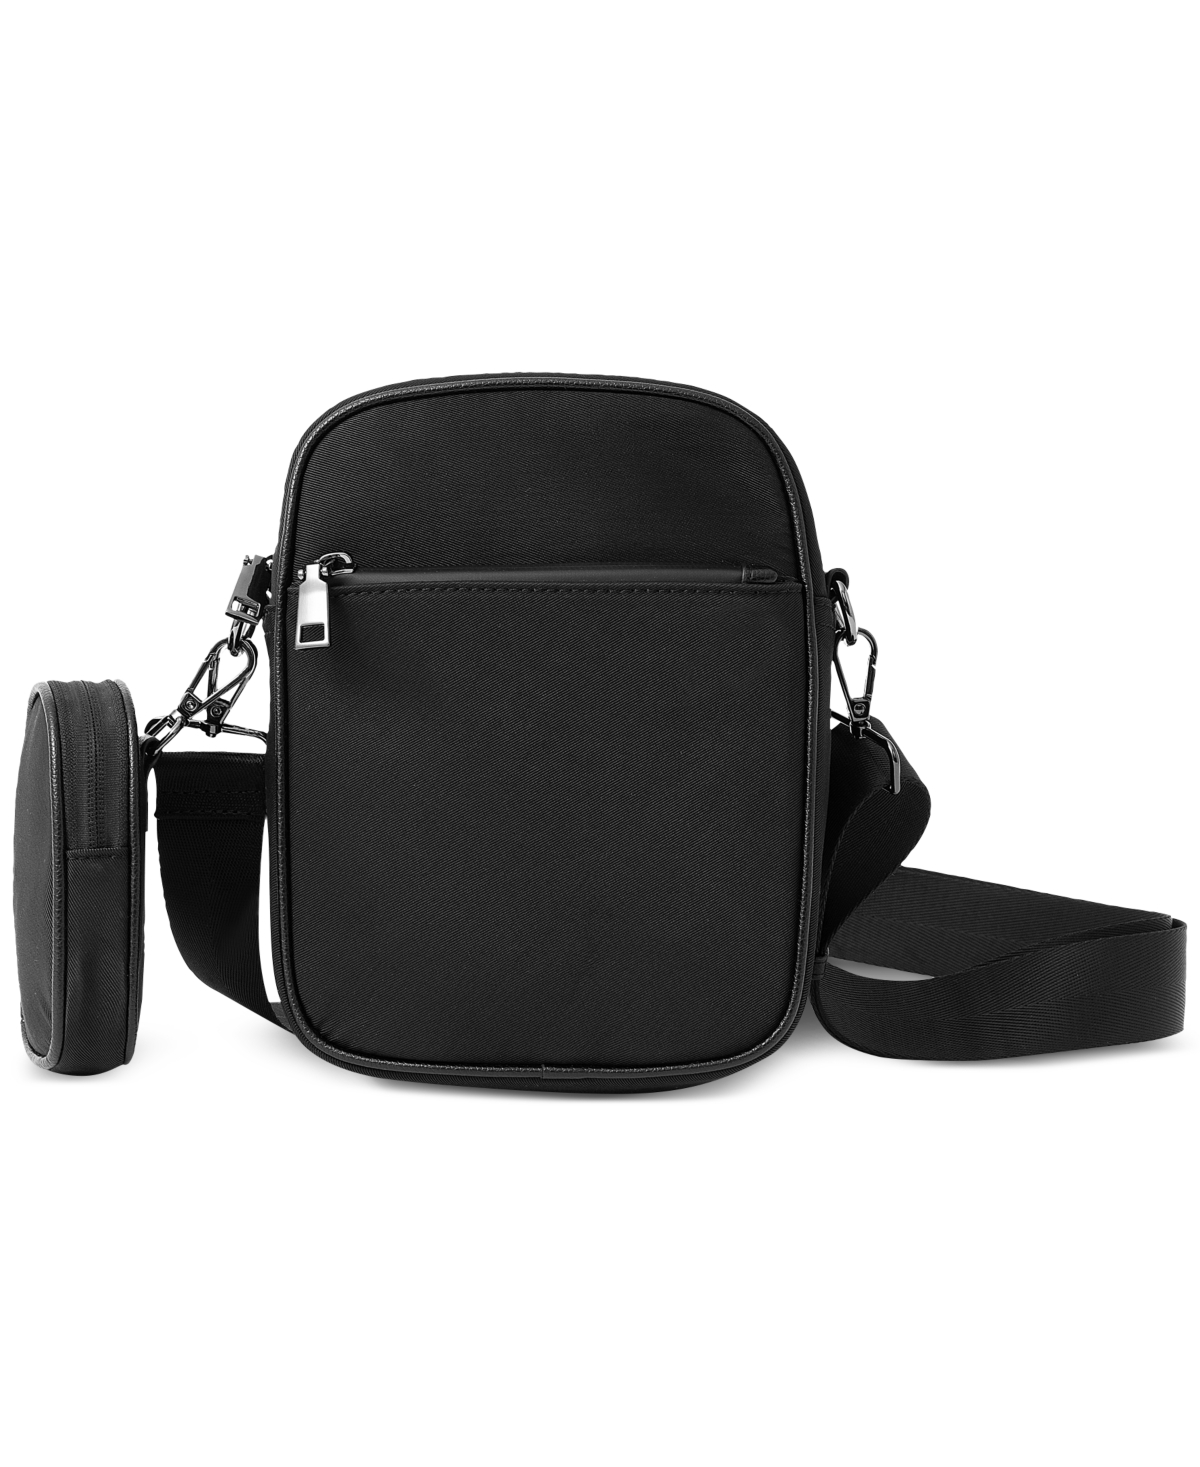 Men's Nylon Zip Messenger Bag, Created for Macy's - Black